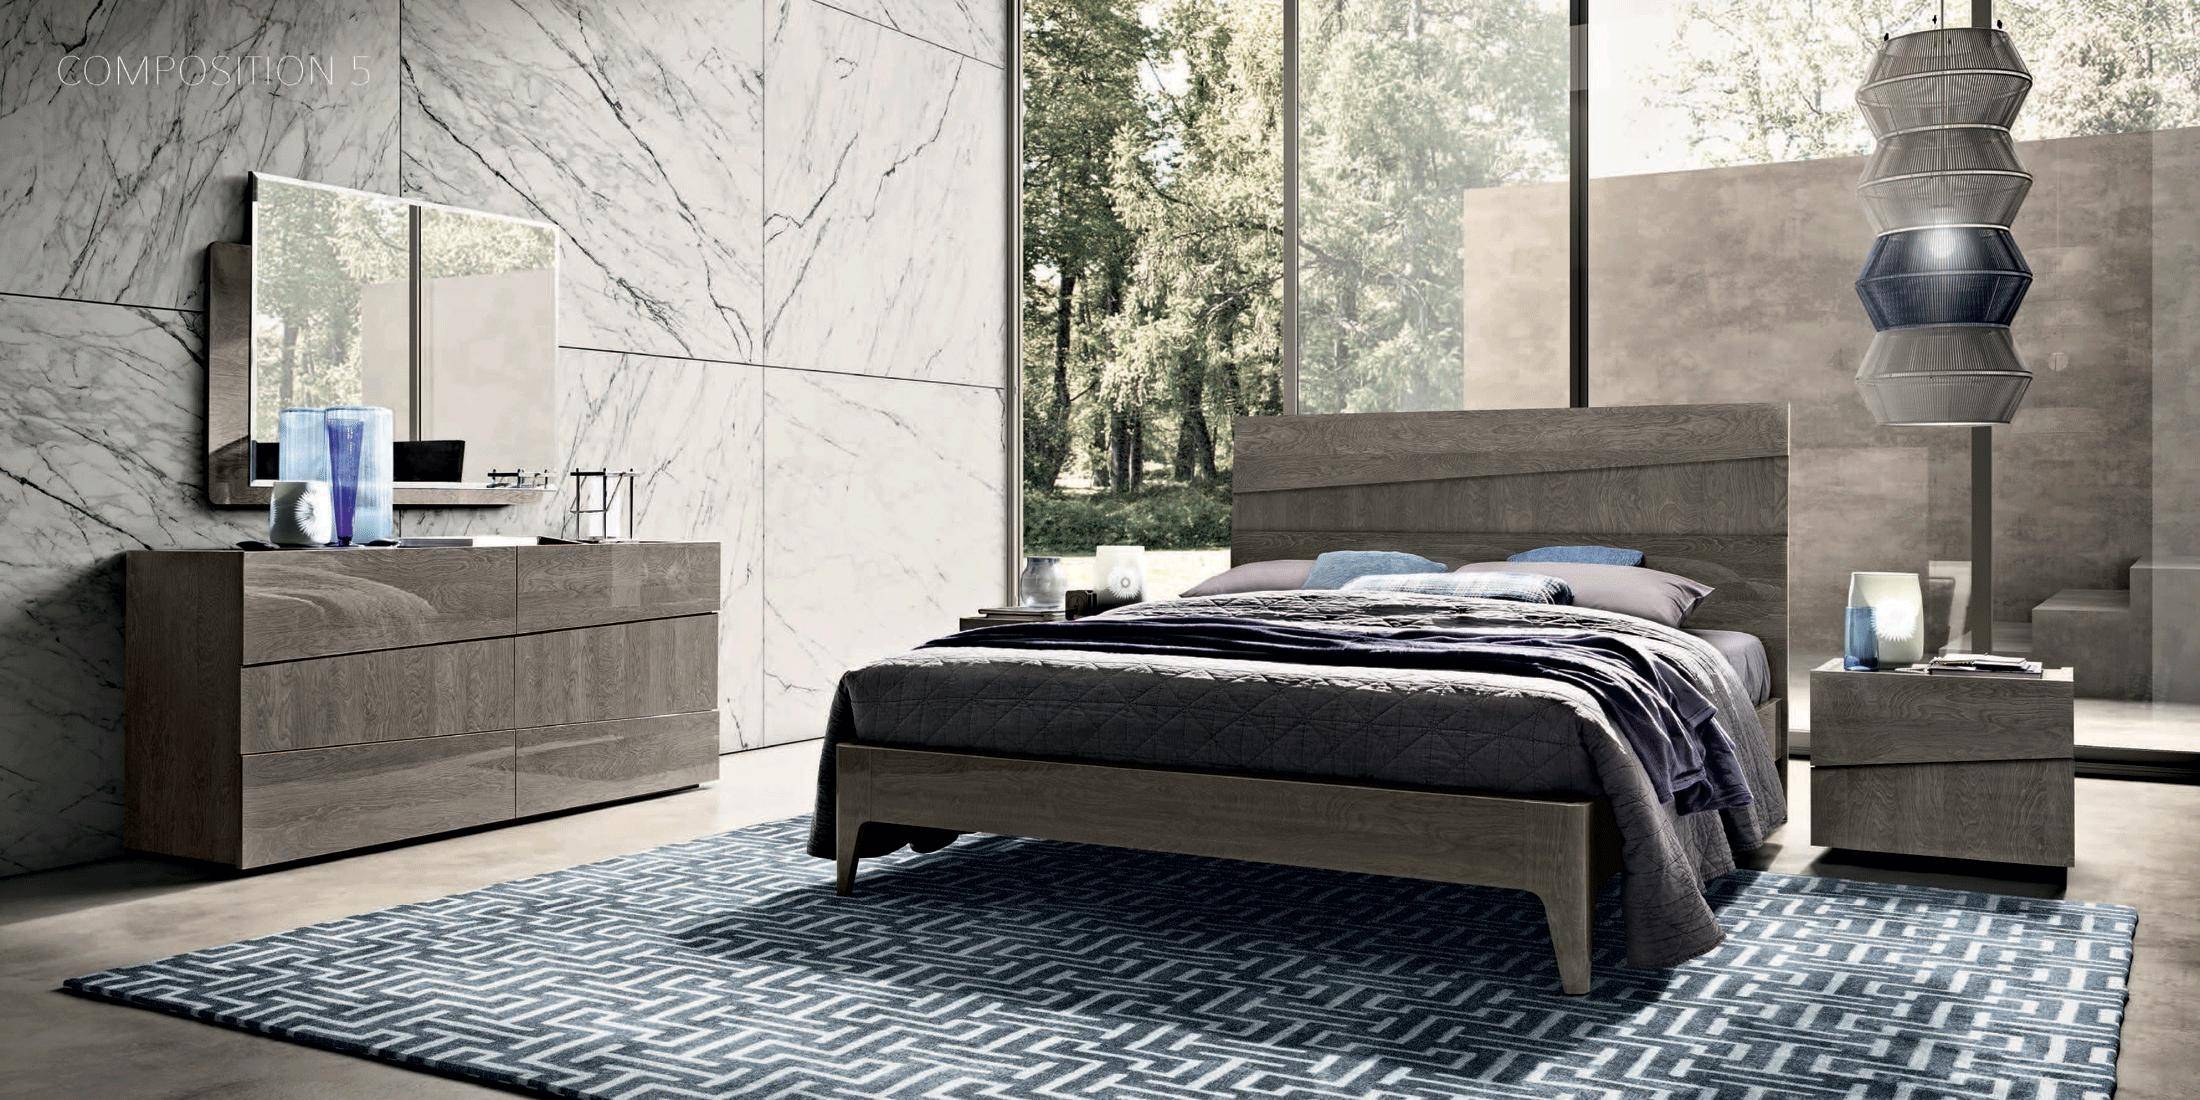 Esf Tekno King Platform Bedroom Set, Gray Wood King Platform Bed